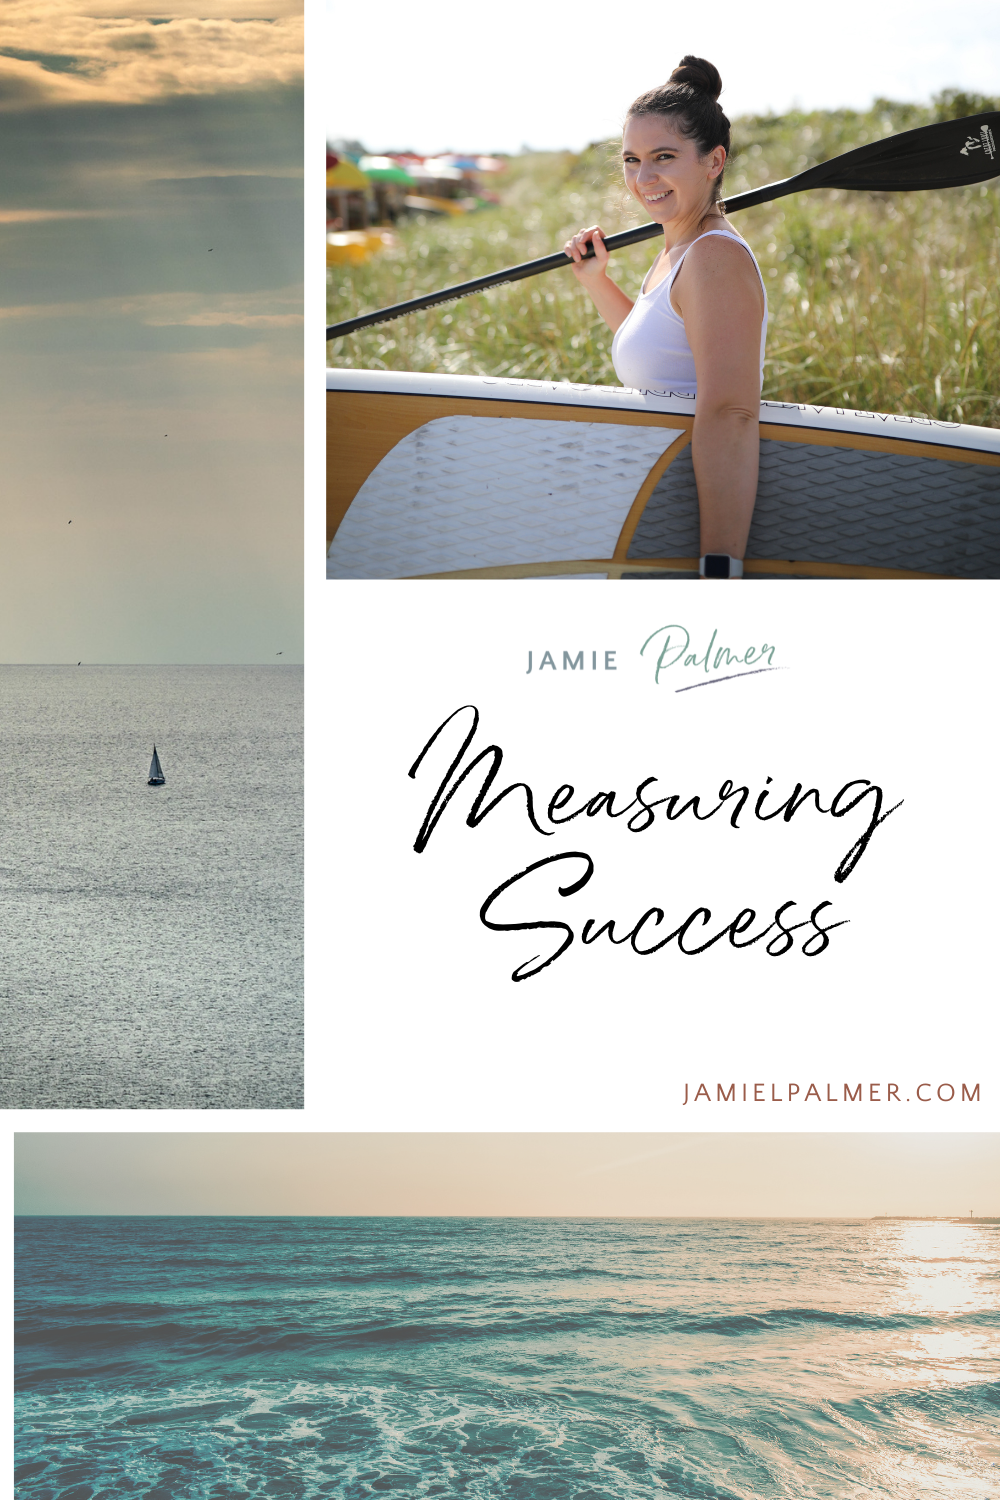 measuring success